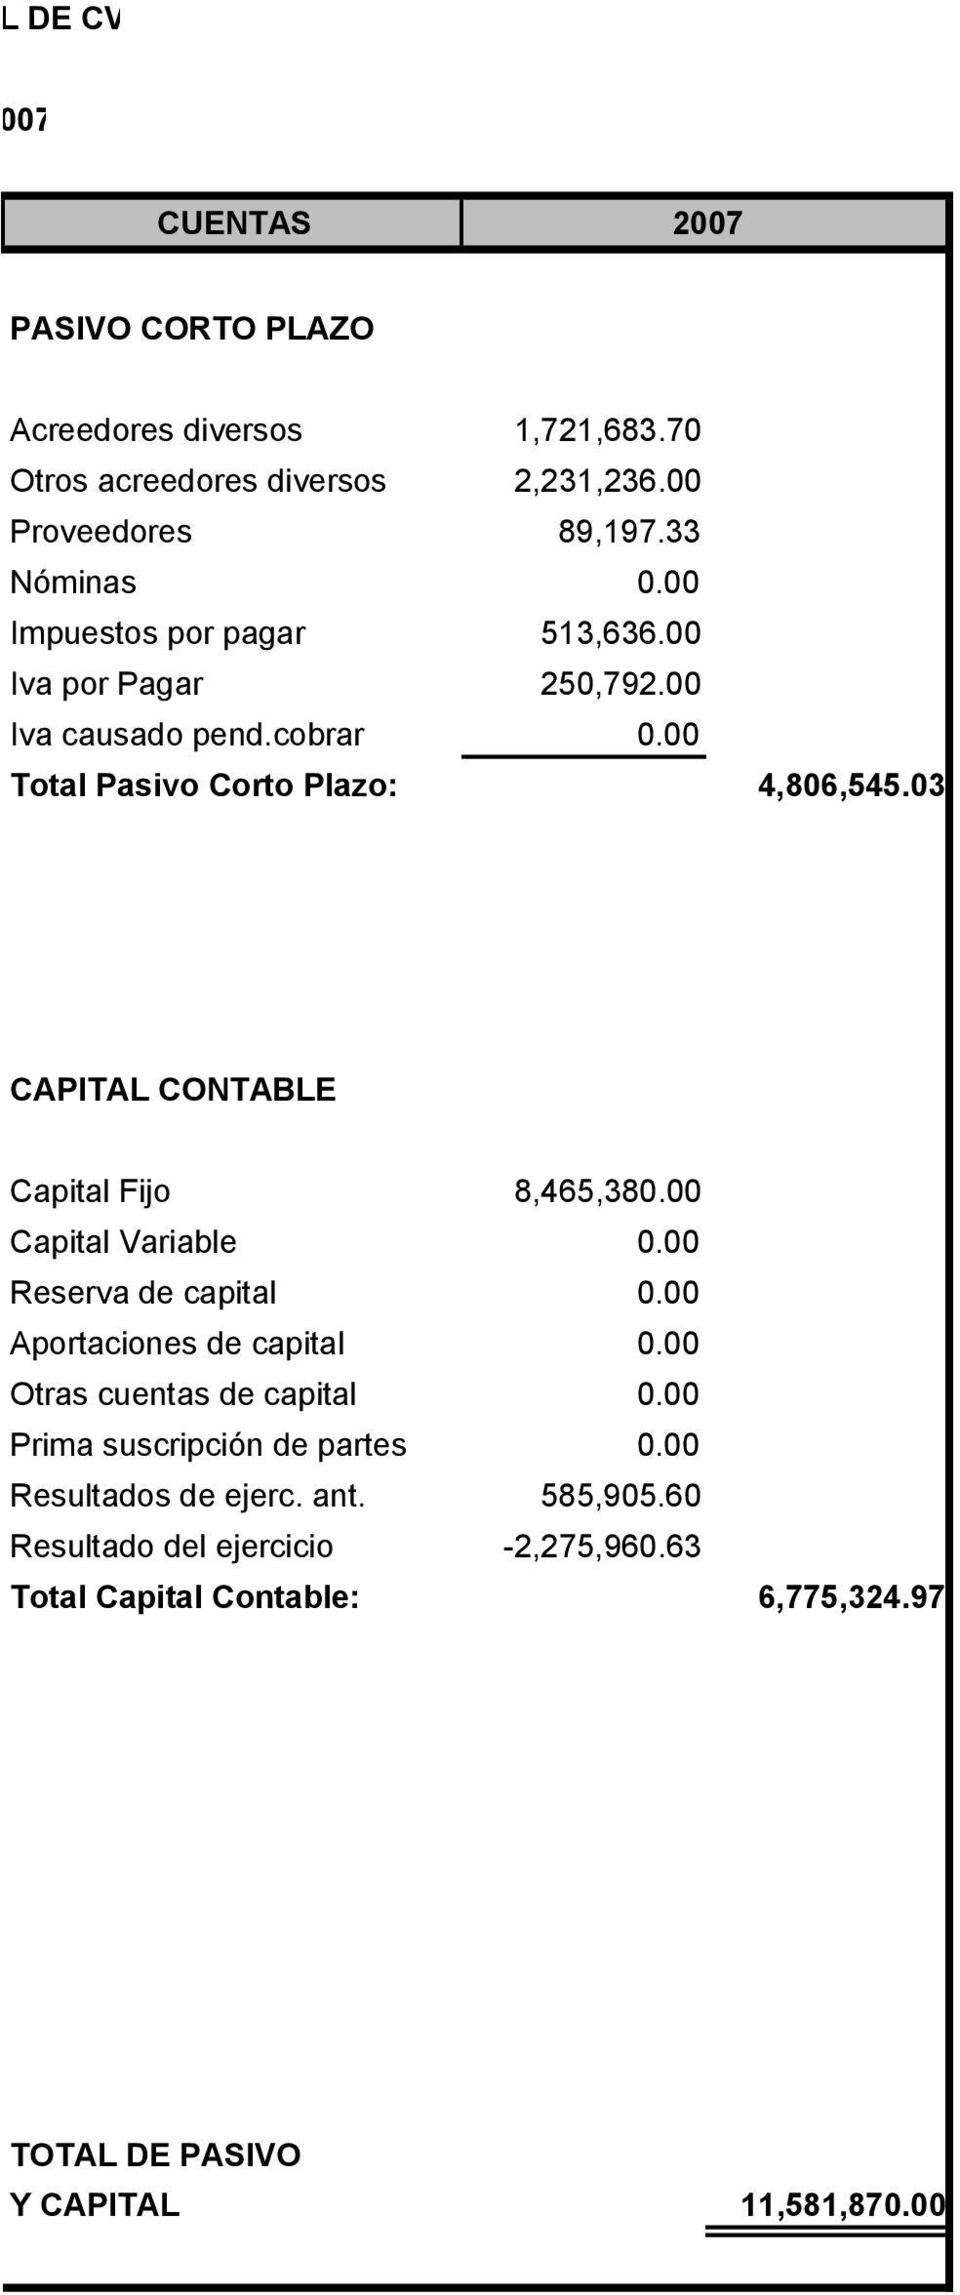 03 CAPITAL CONTABLE Capital Fijo 8,465,380.00 Capital Variable 0.00 Reserva de capital 0.00 Aportaciones de capital 0.